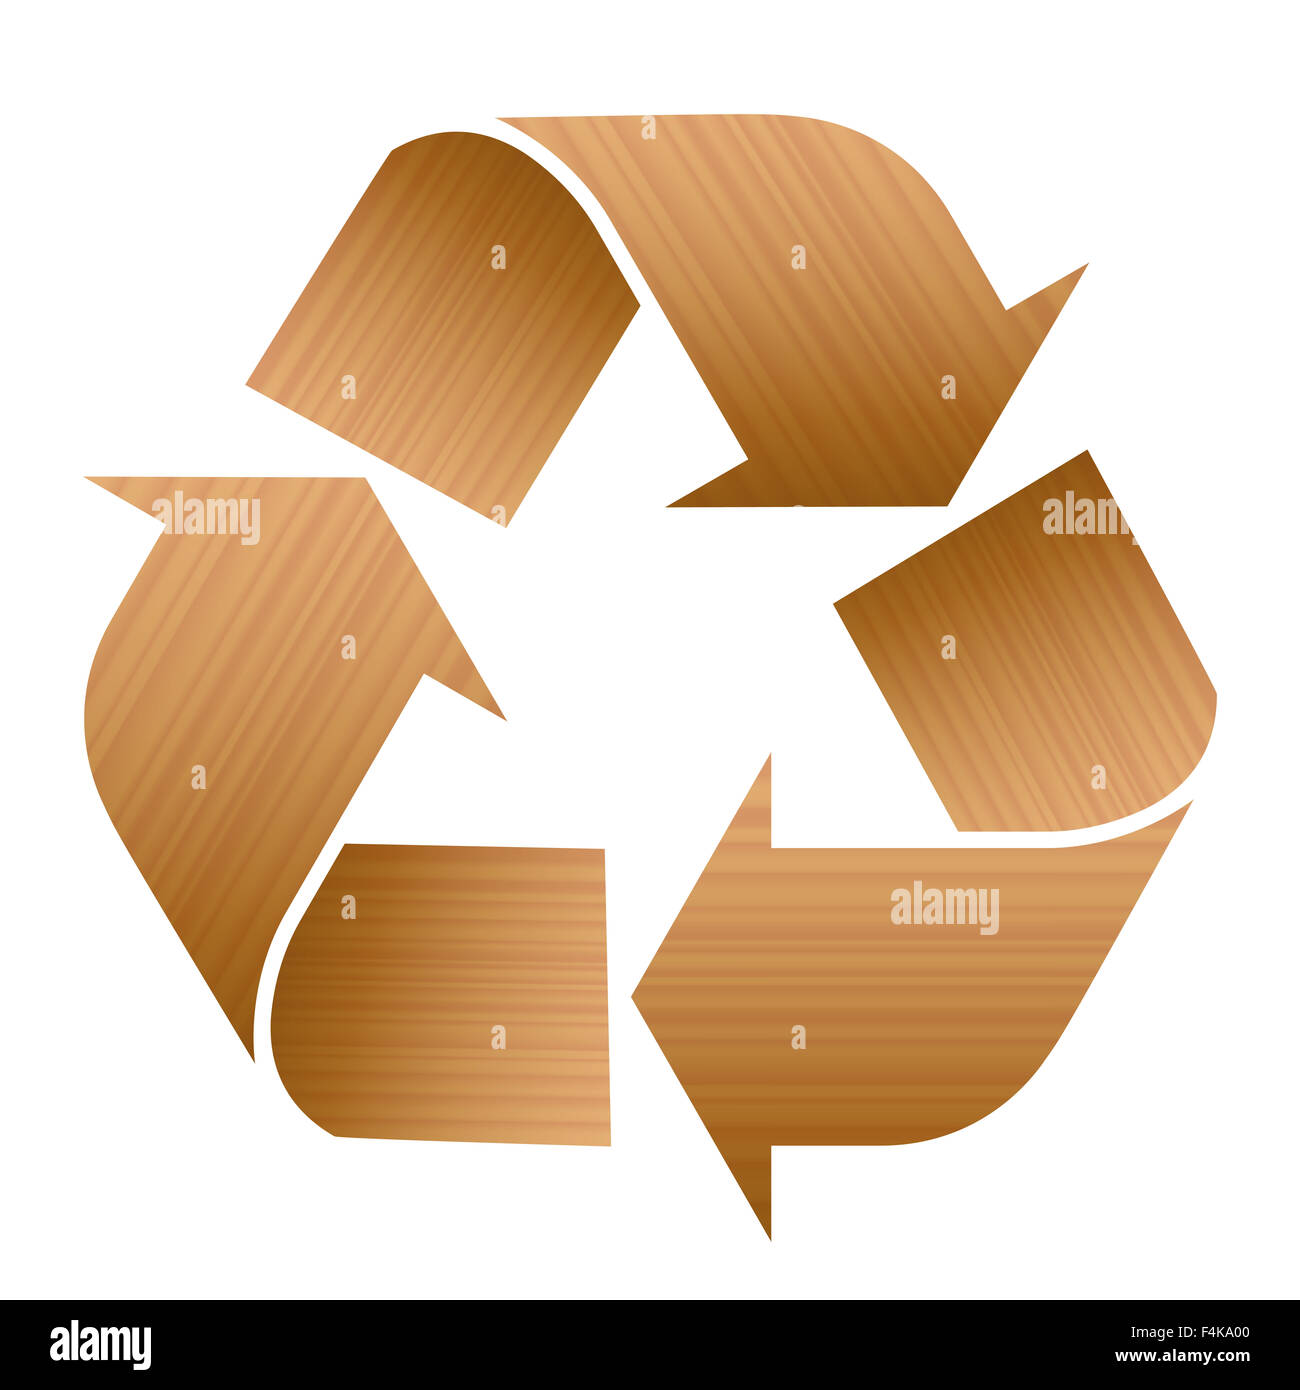 Recycling-Symbol mit Holzstruktur. Abbildung auf weißem Hintergrund. Stockfoto